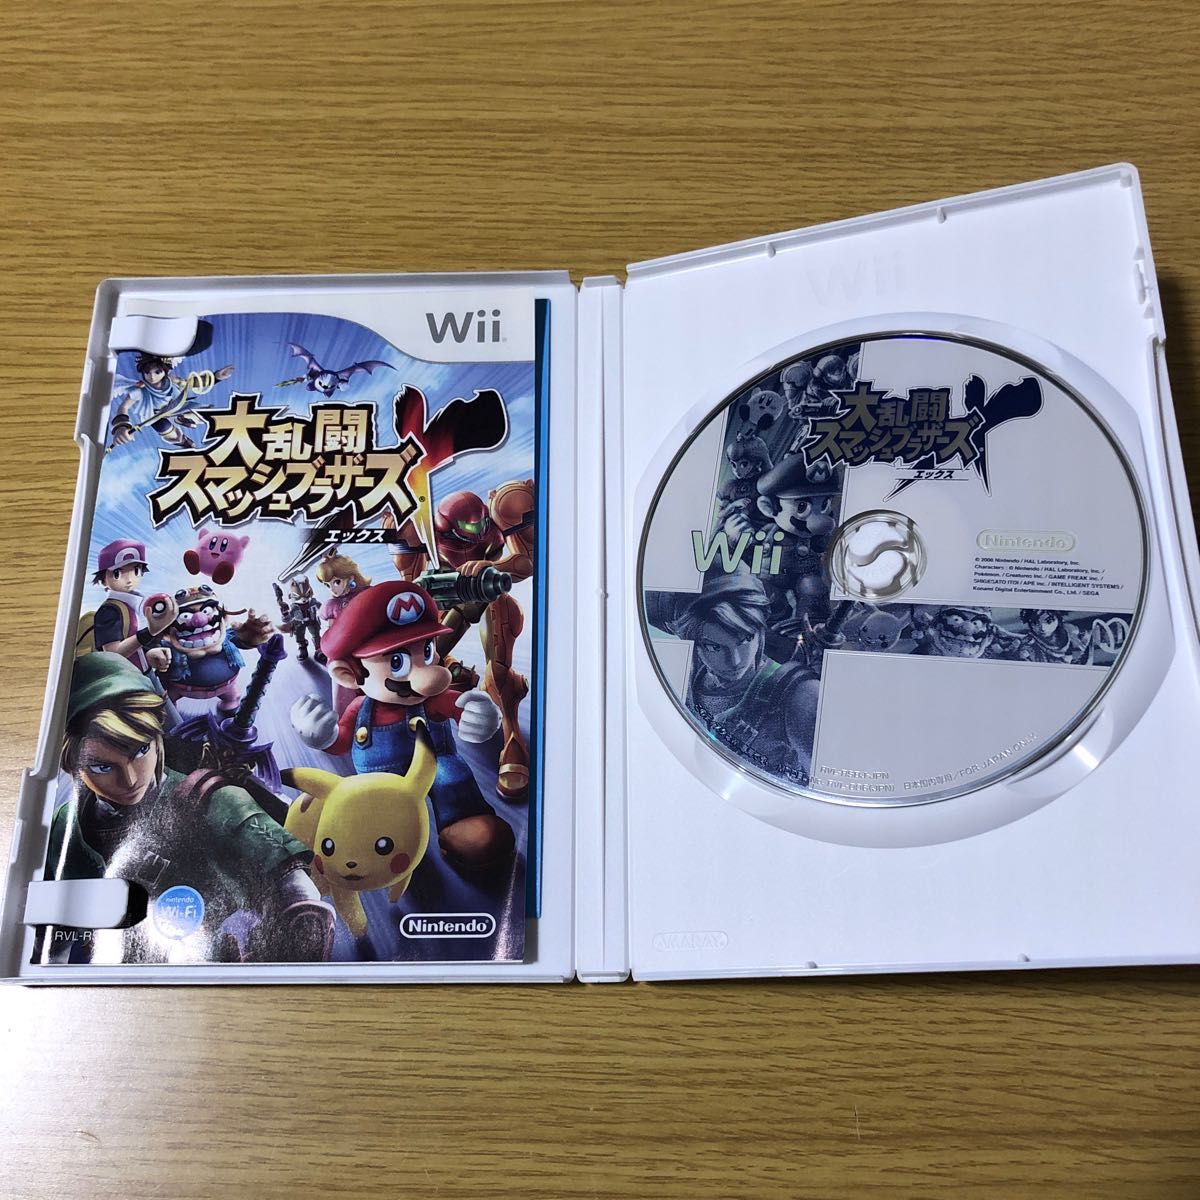 大乱闘スマッシュブラザーズX Wii、マリオカート Wii